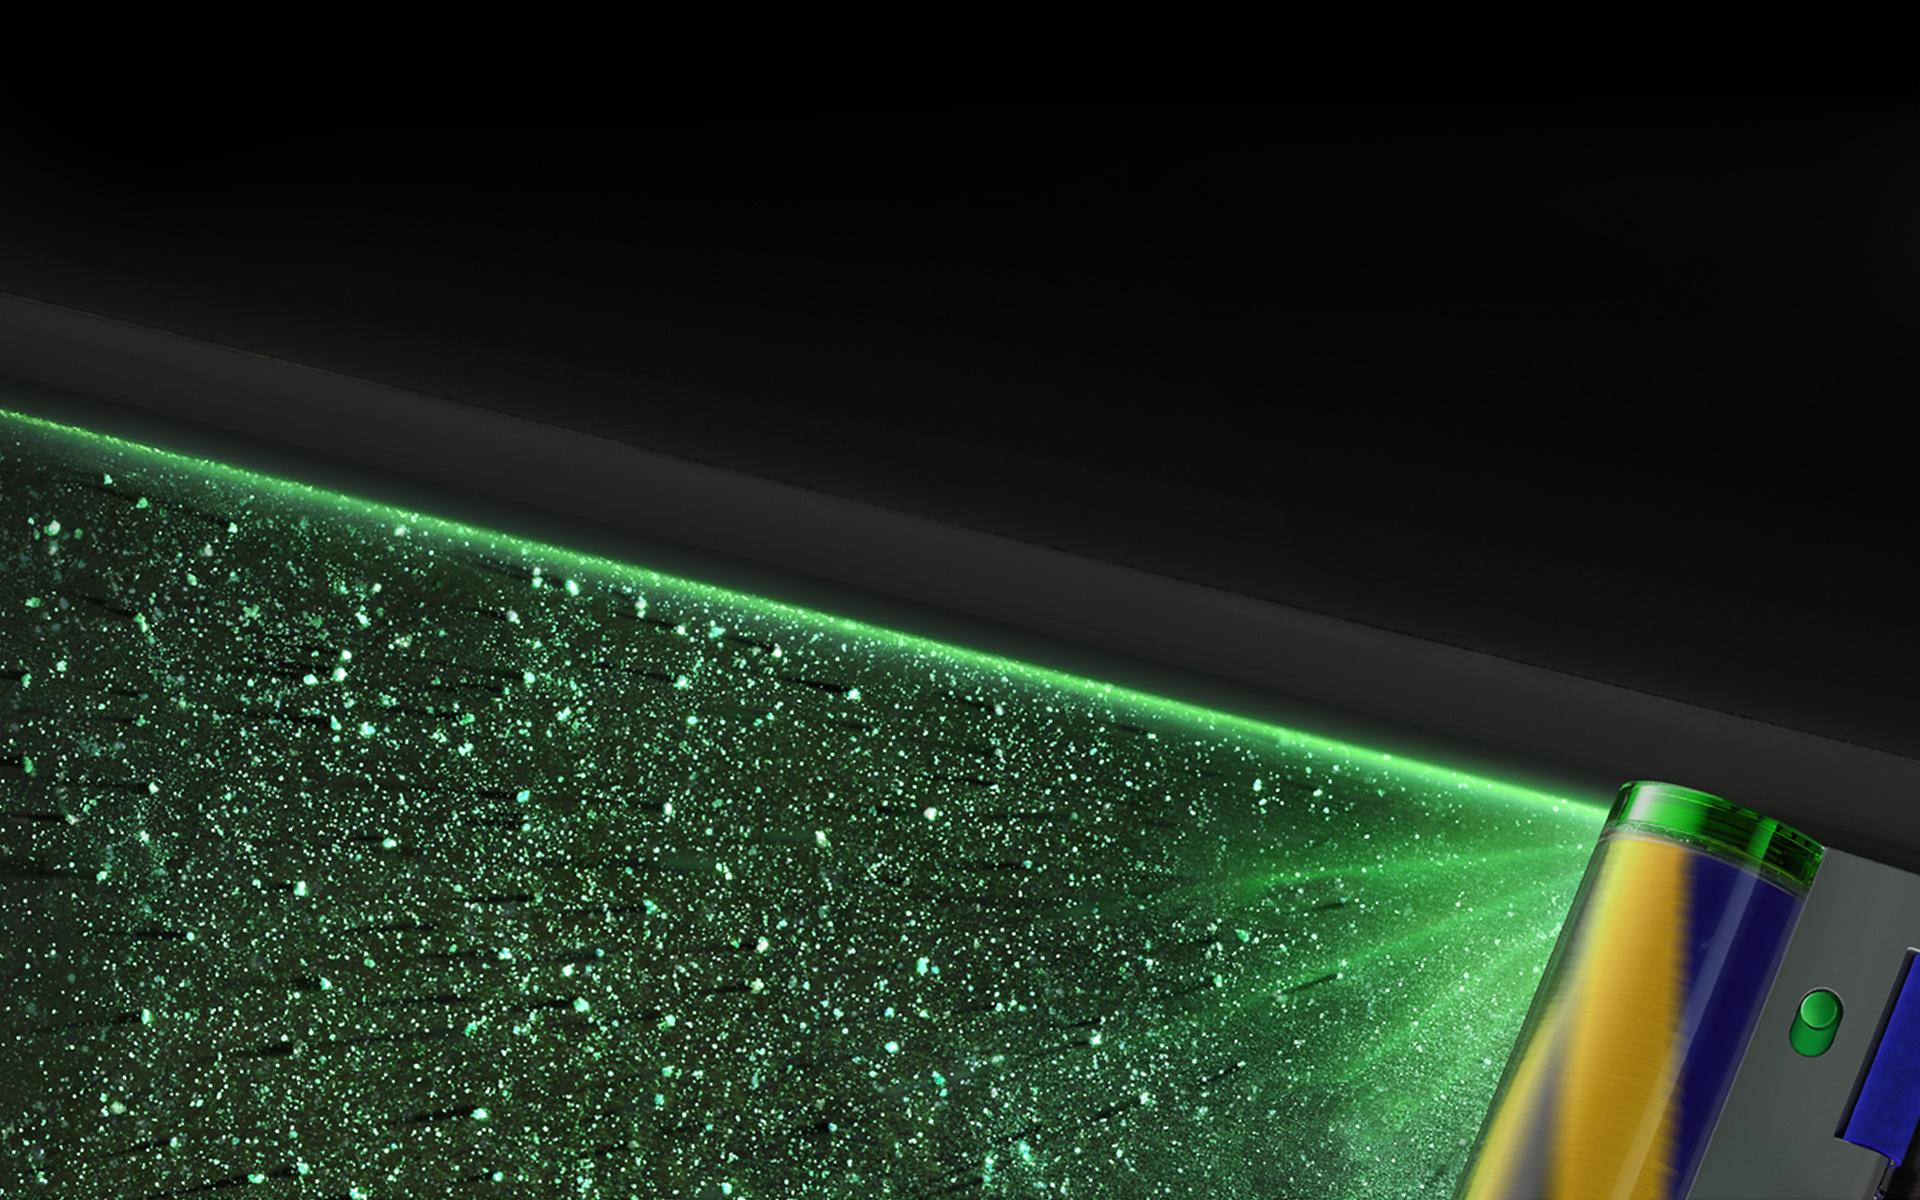 מבט מקרוב על אלומת לייזר ירוקה המבליטה את חלקיקי האבק הלא נראים לעין